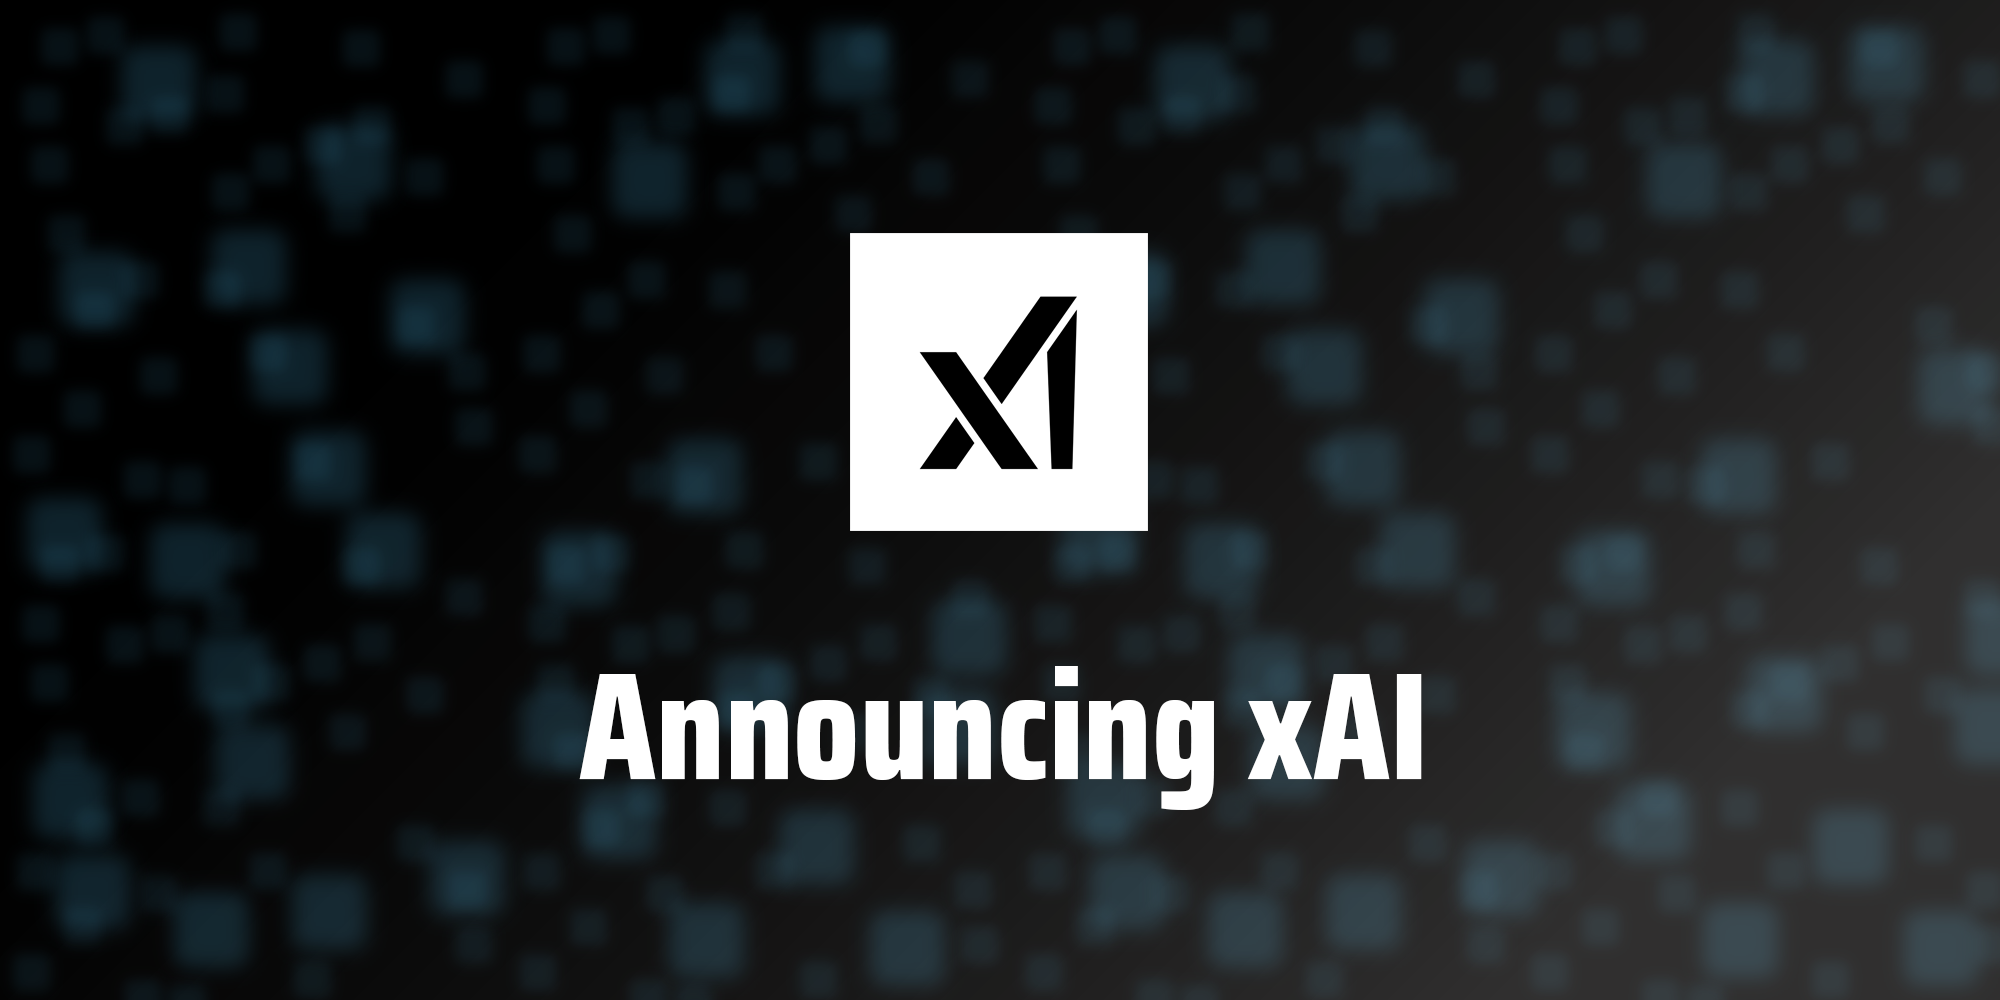 xAI выпустит первую модель искусственного интеллекта для "избранной группы" пользователей